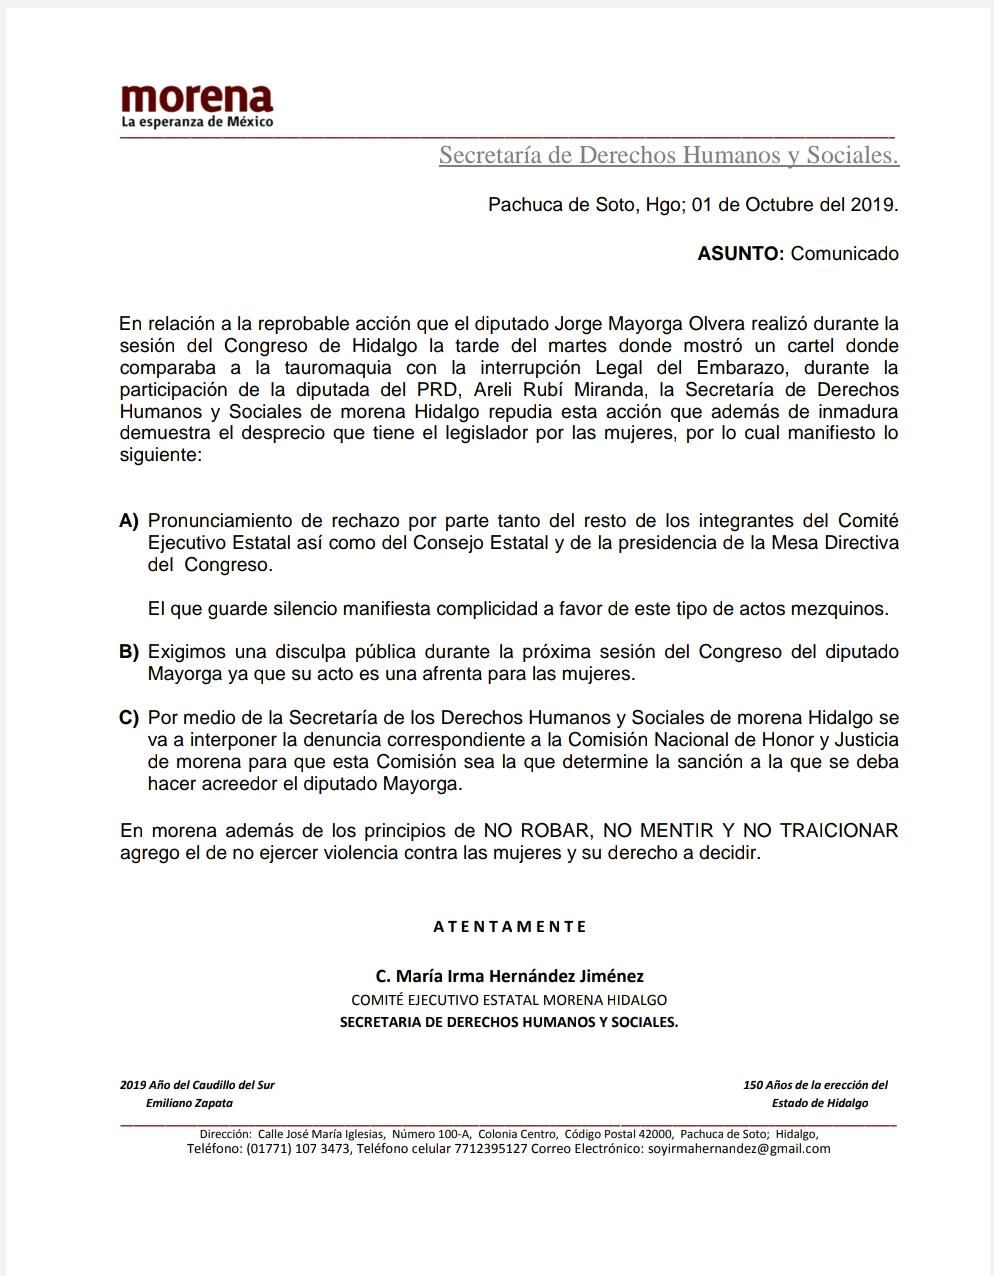 Secretaria de Derechos Humanos de Morena  interpone denuncia ante Comisión de Honestidad y Justicia de Morena contra el diputado Jorge Mayorga.